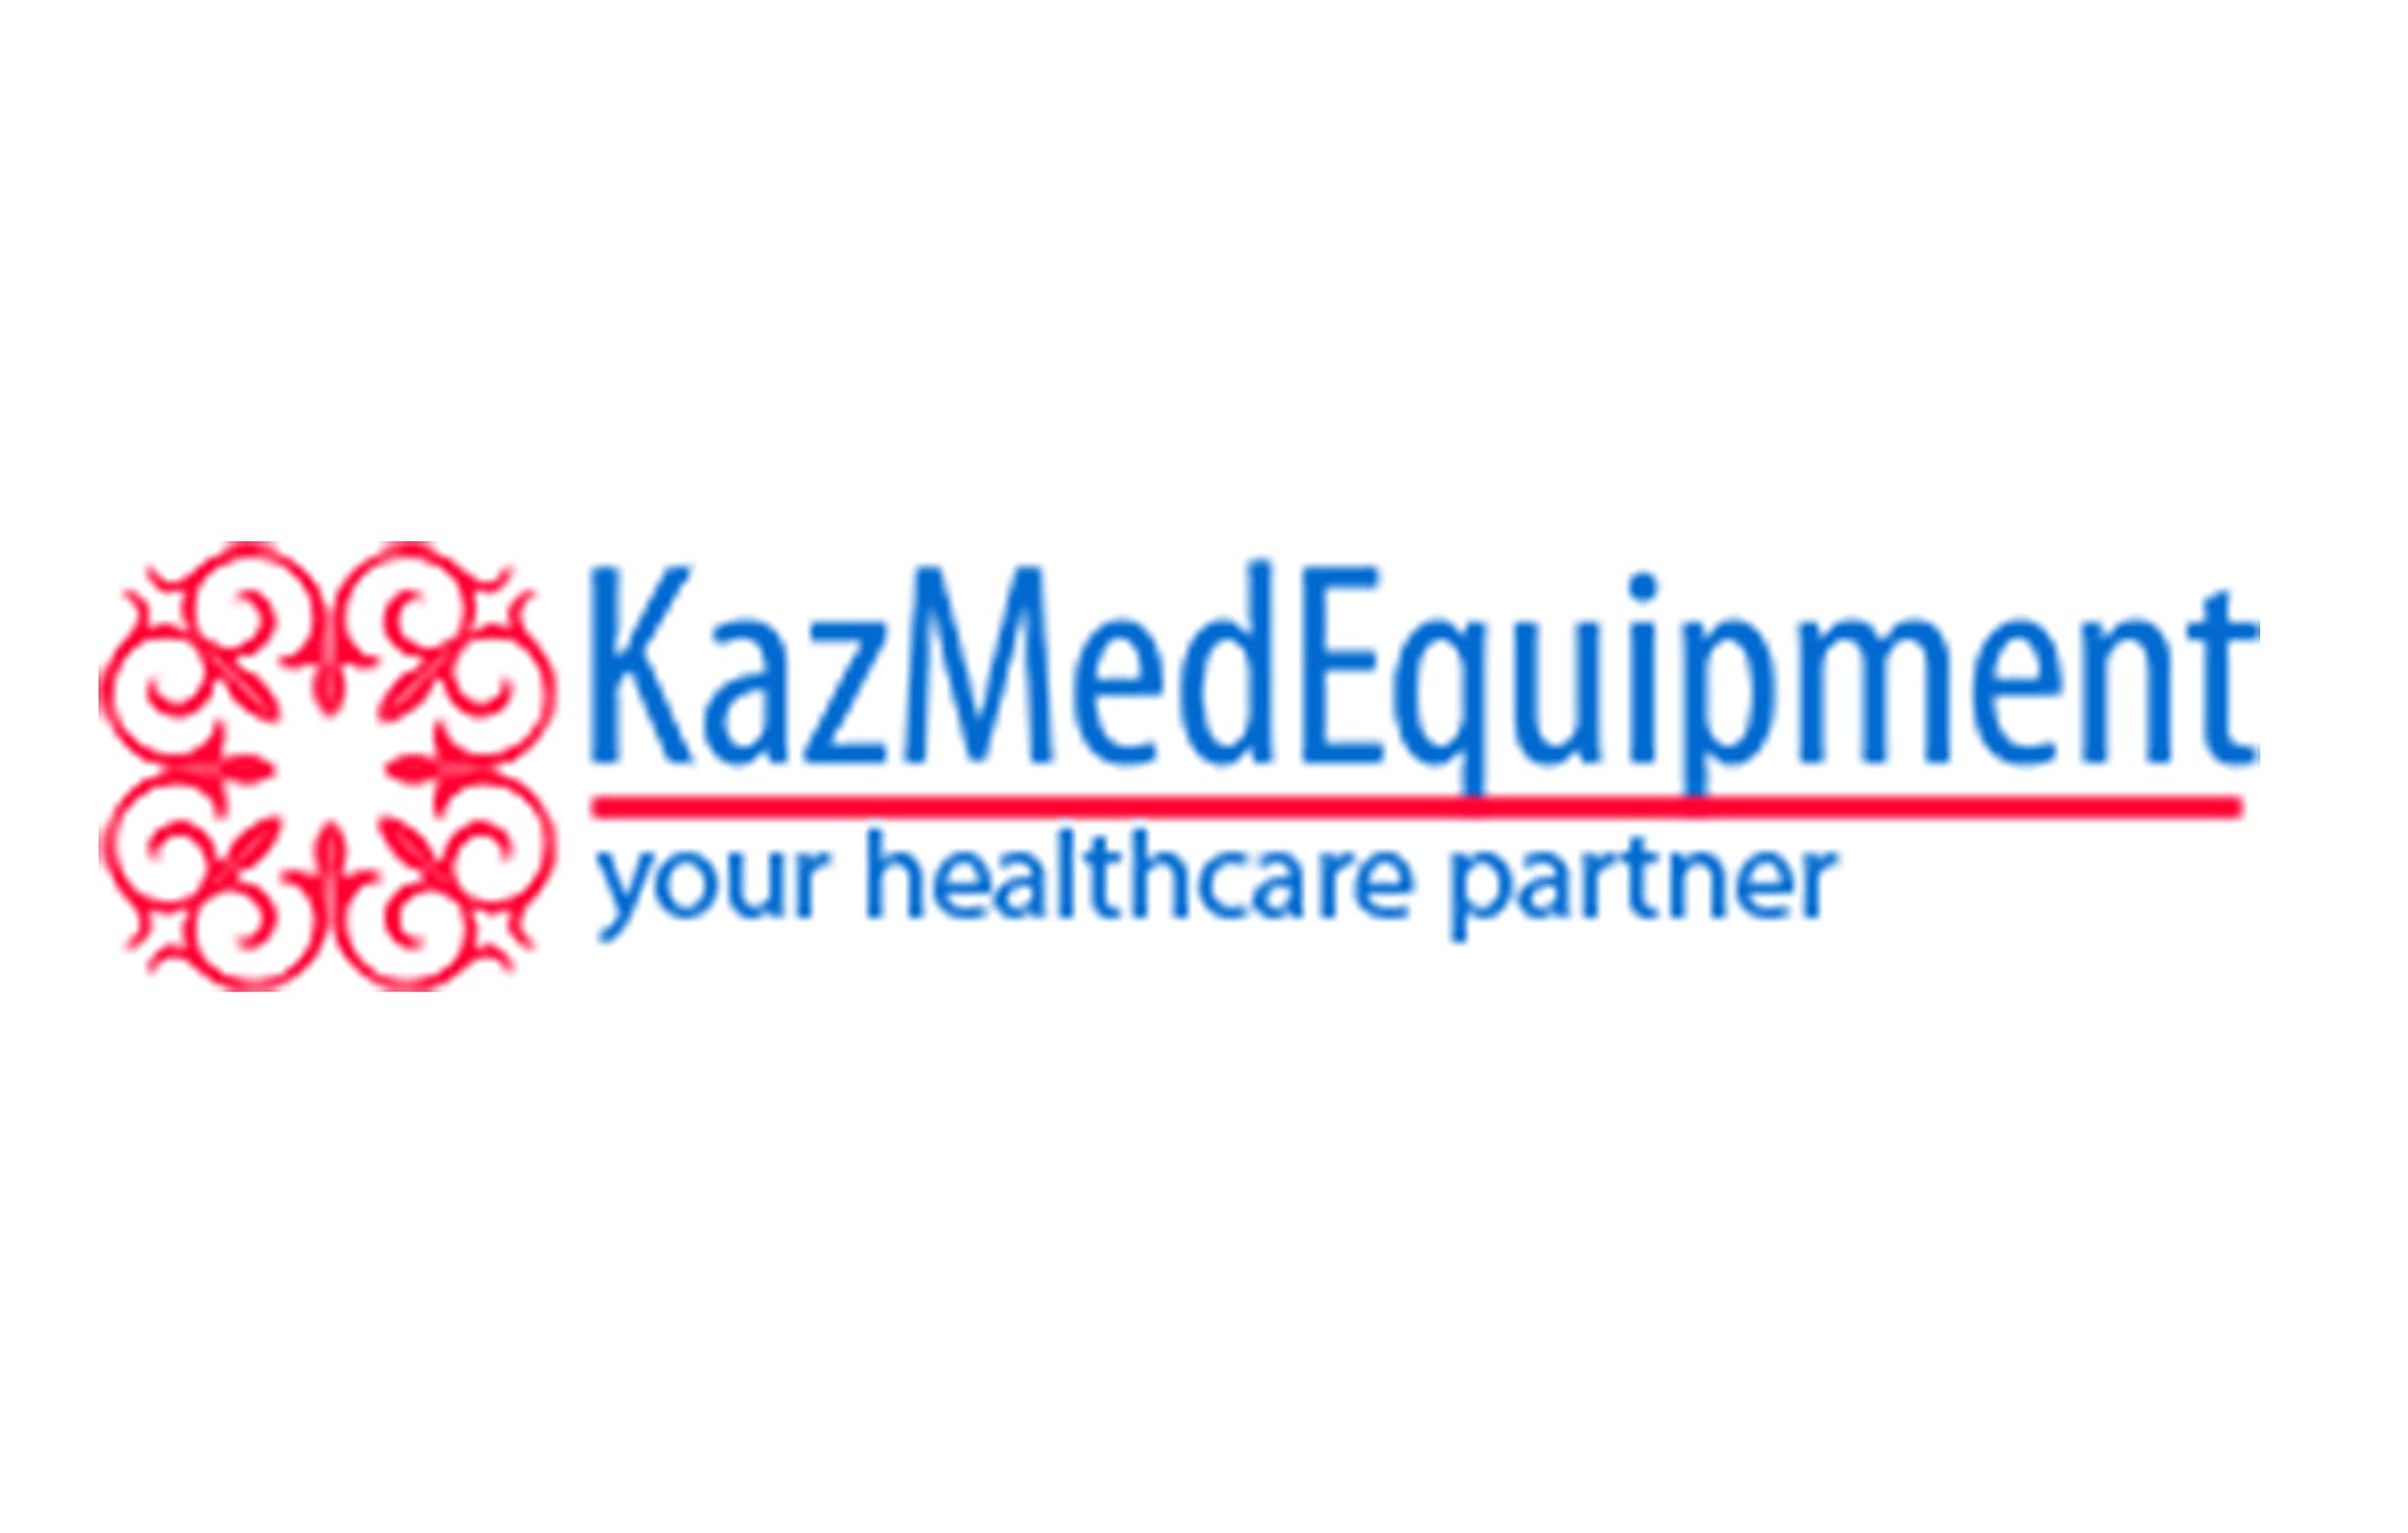 KazMedEquipment